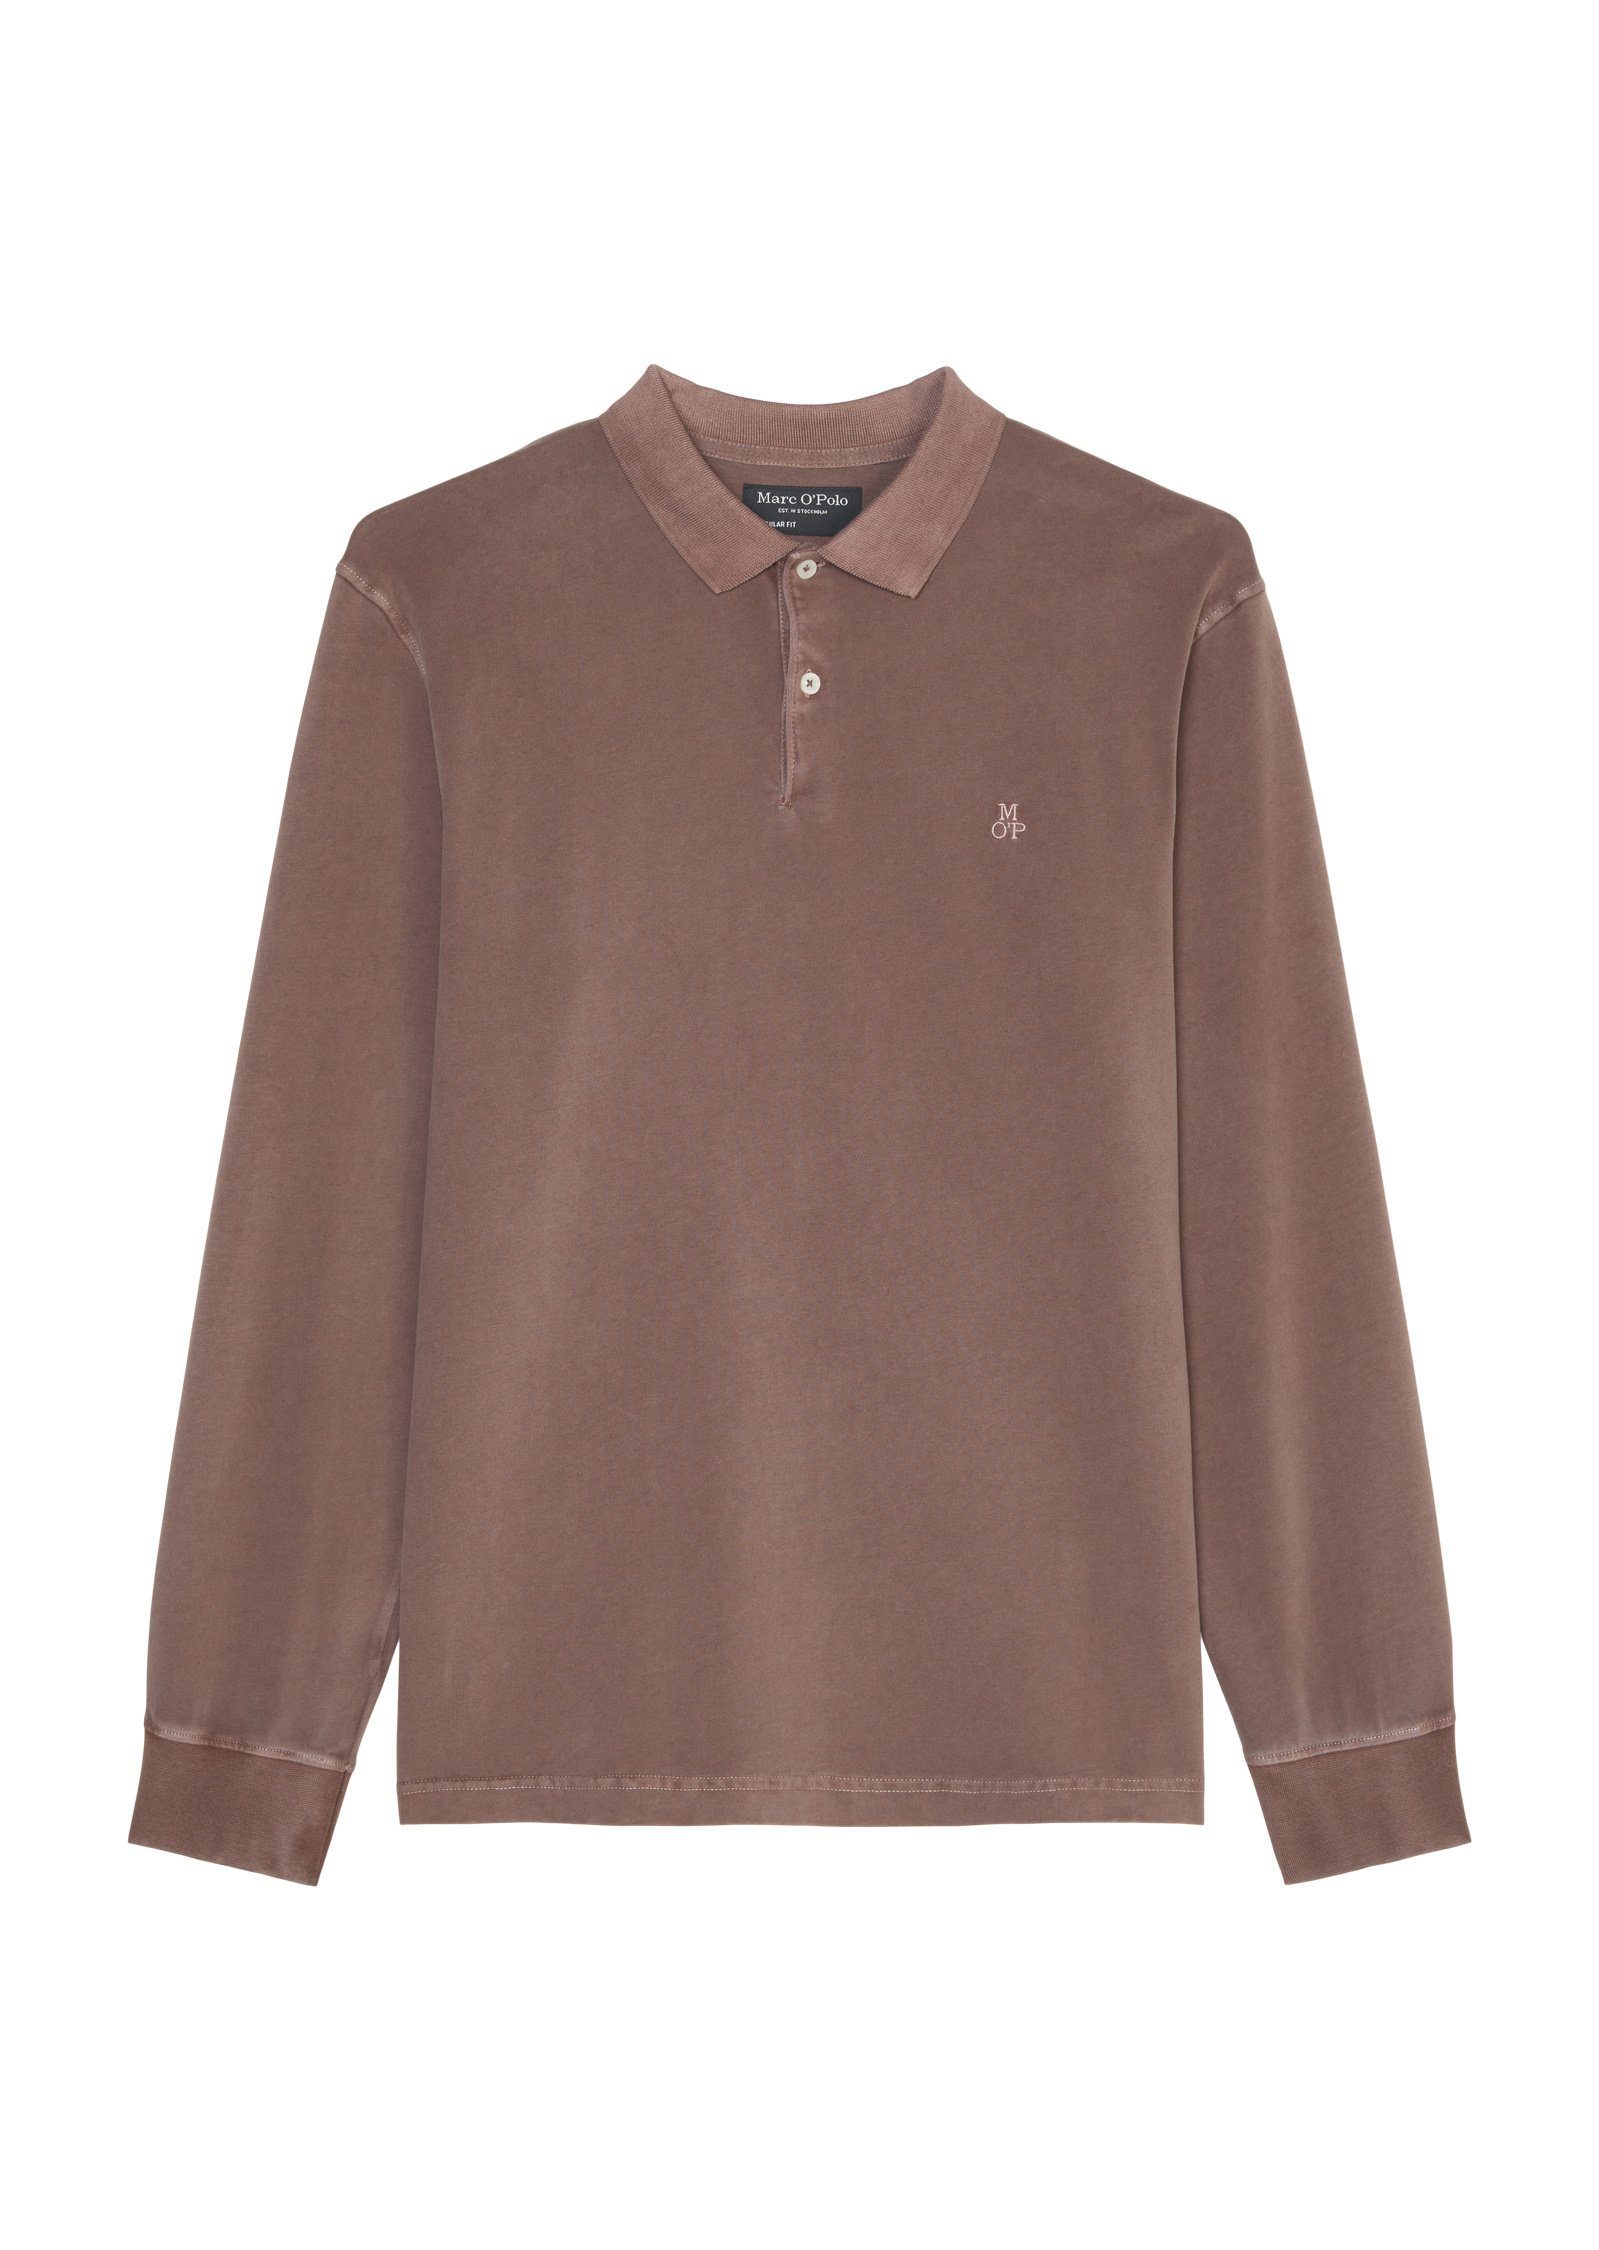 Marc O'Polo Langarm-Poloshirt Soft-Touch-Jersey-Qualität braun in schwerer